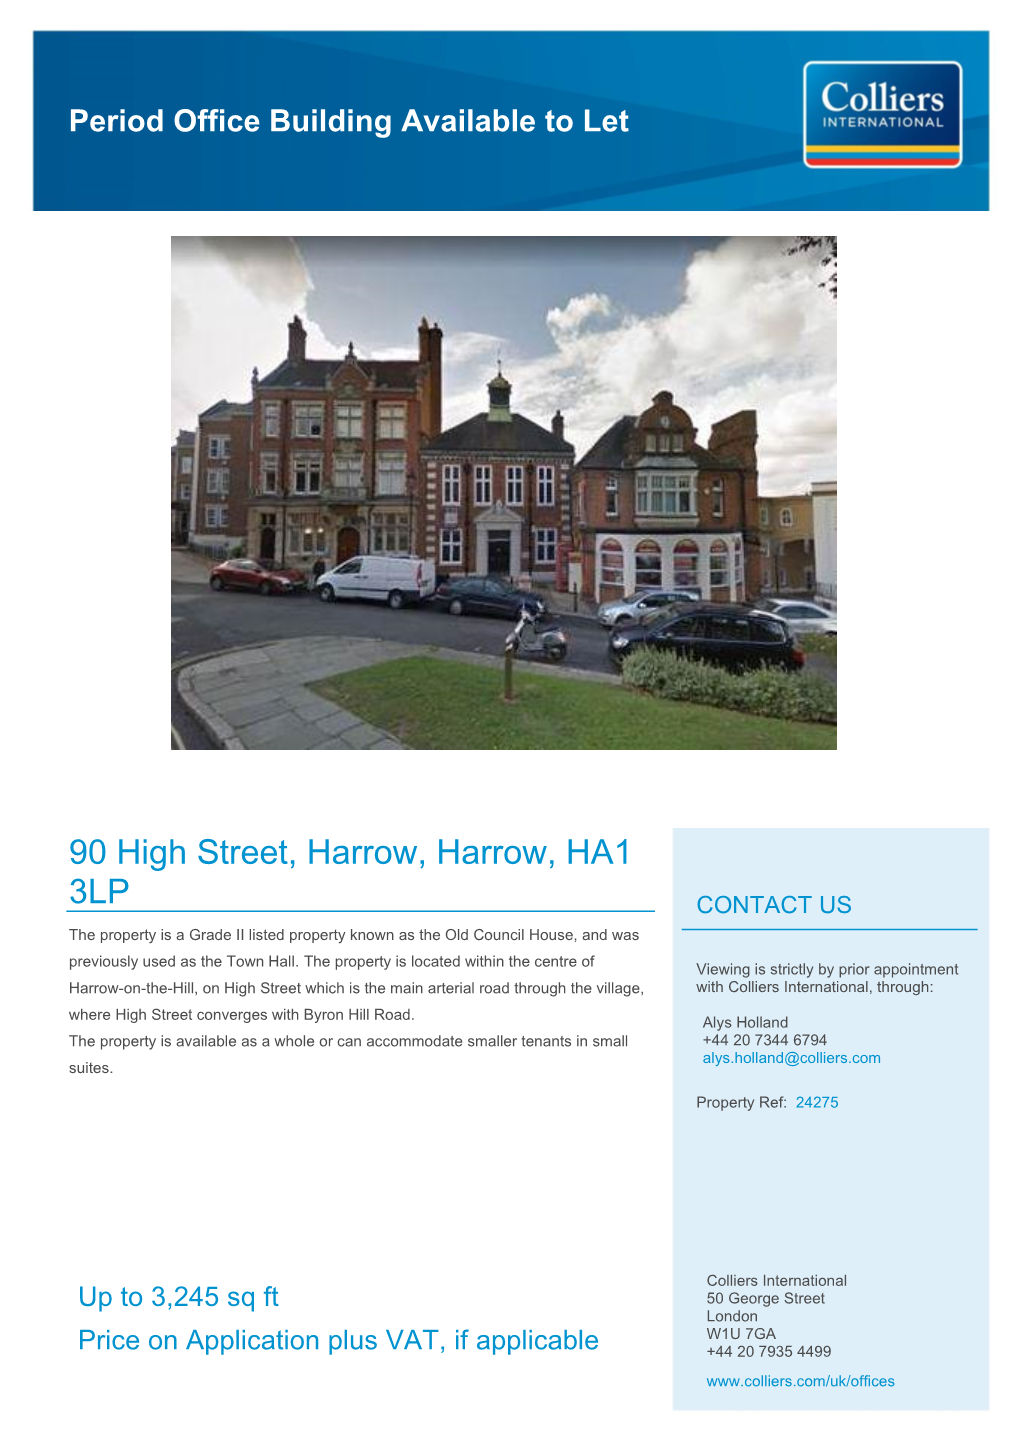 90 High Street, Harrow, Harrow, HA1 3LP CONTACT US